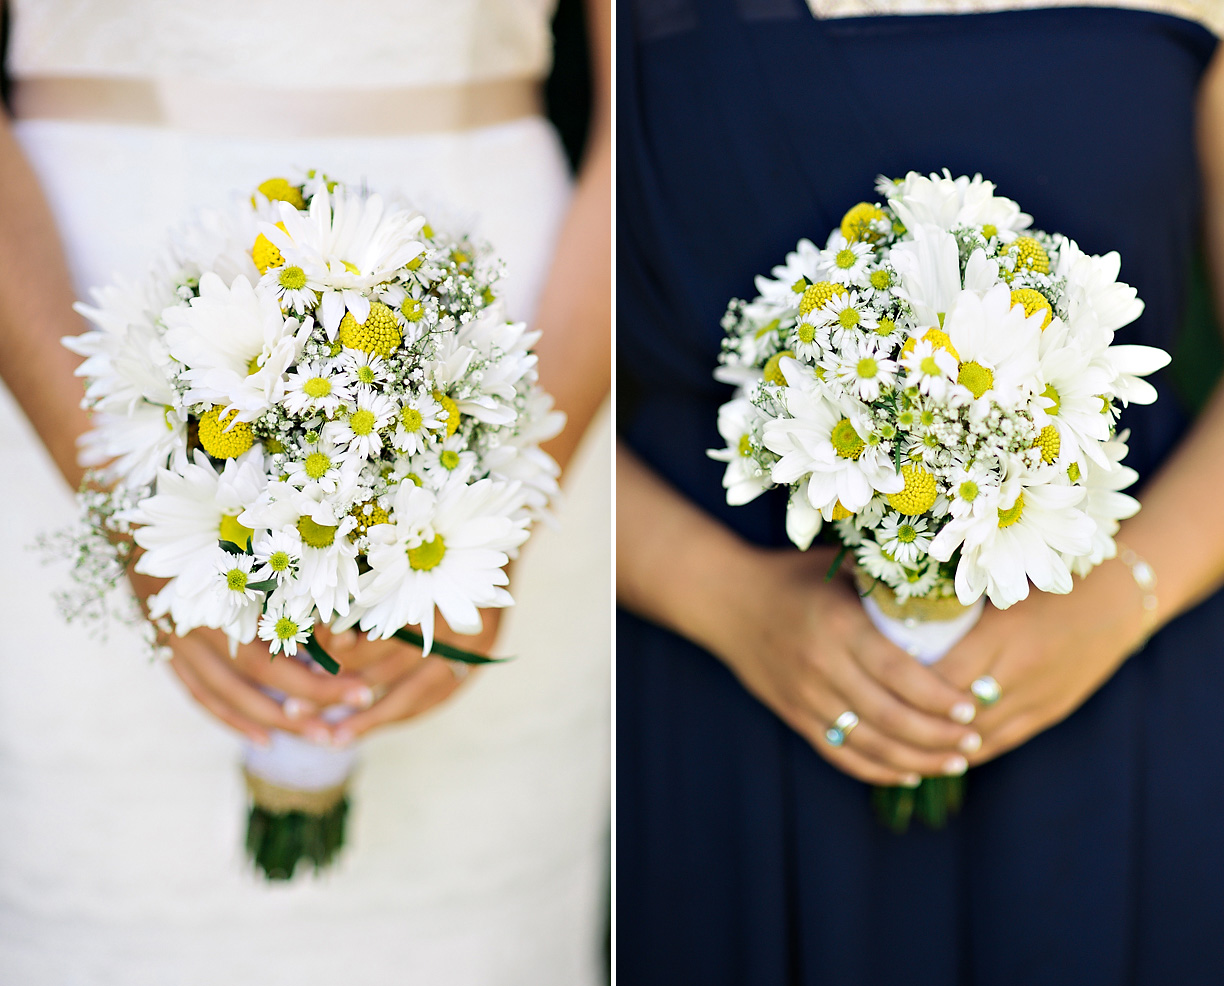 073013-daisy-wedding-bouquets.jpg